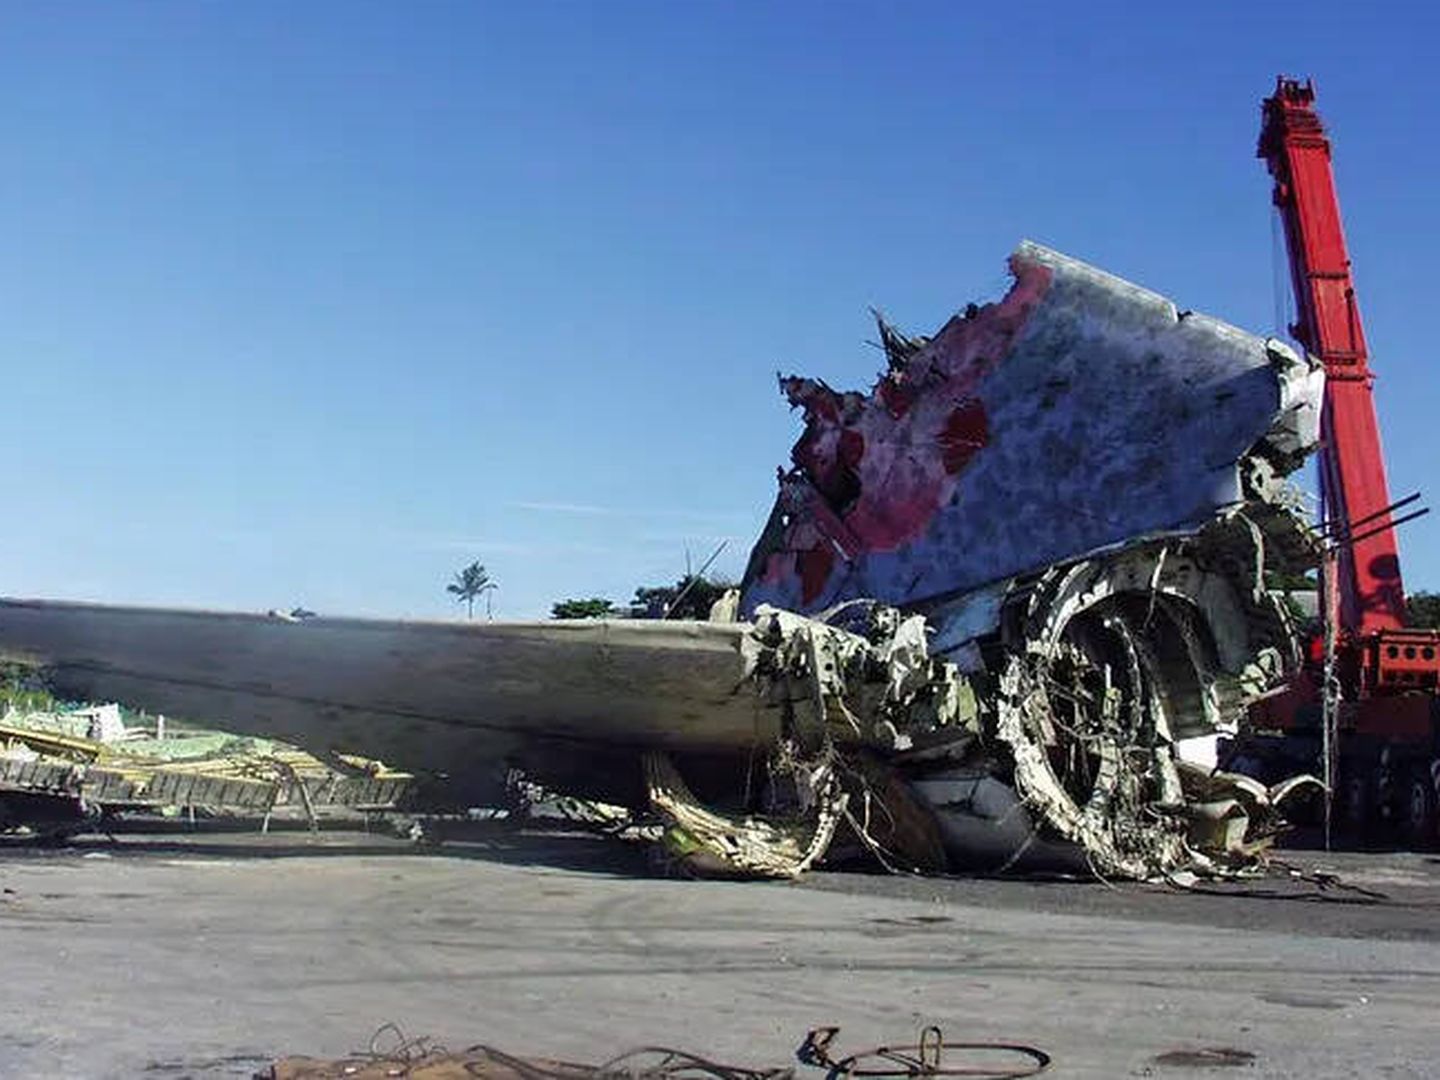 Imágenes de los restos de la aeronave tras el accidente (Fuente: Informe oficial)